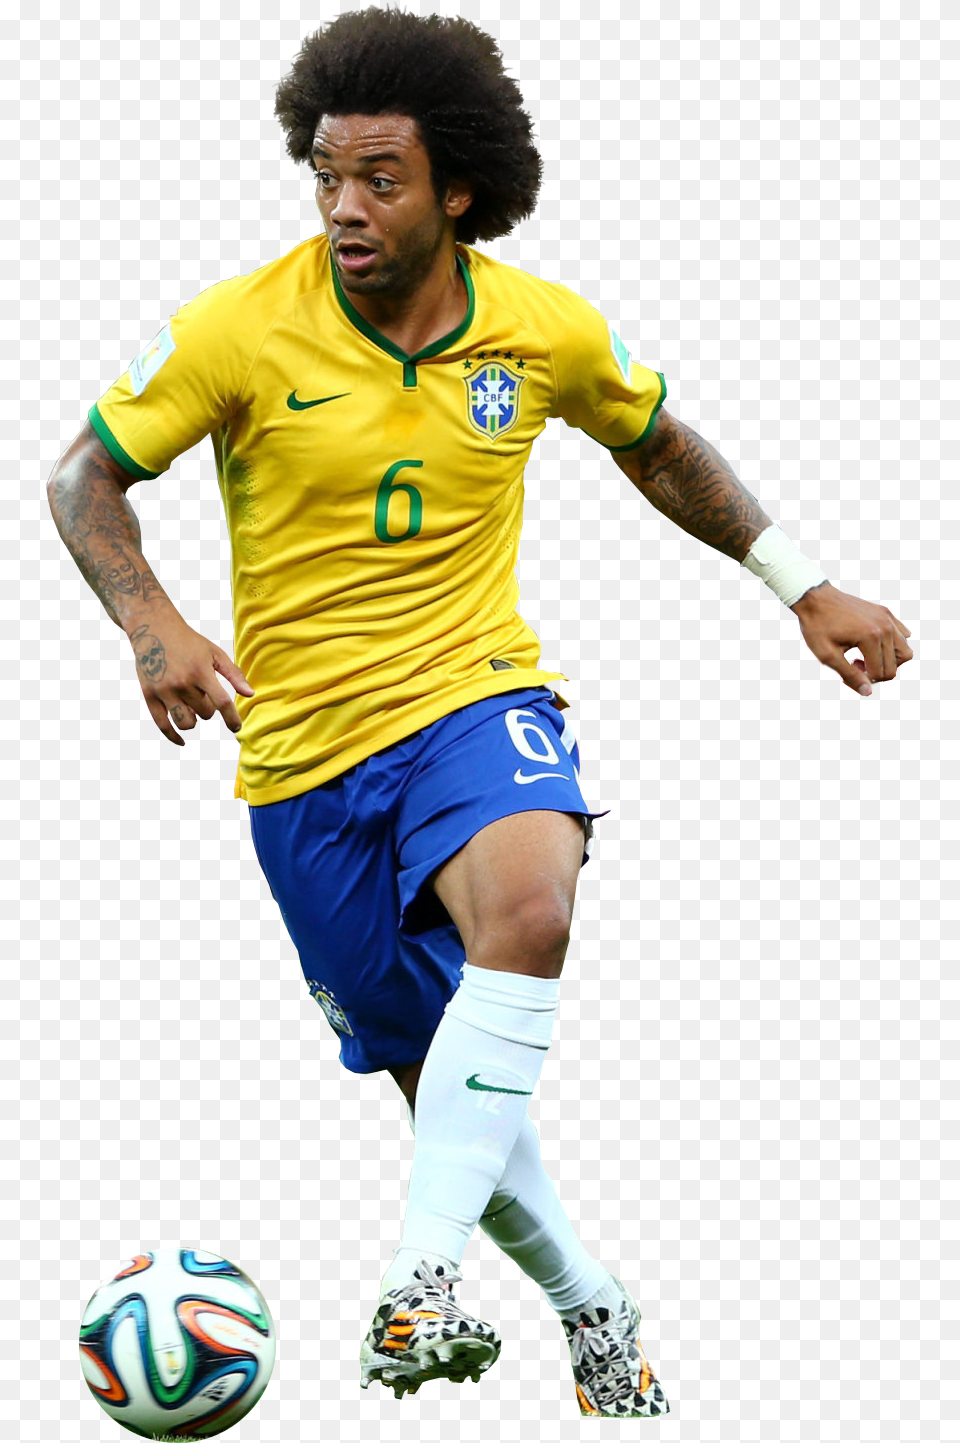 Marcelo Render Brazil Football Player Marcelo, Ball, Soccer Ball, Soccer, Sport Free Transparent Png